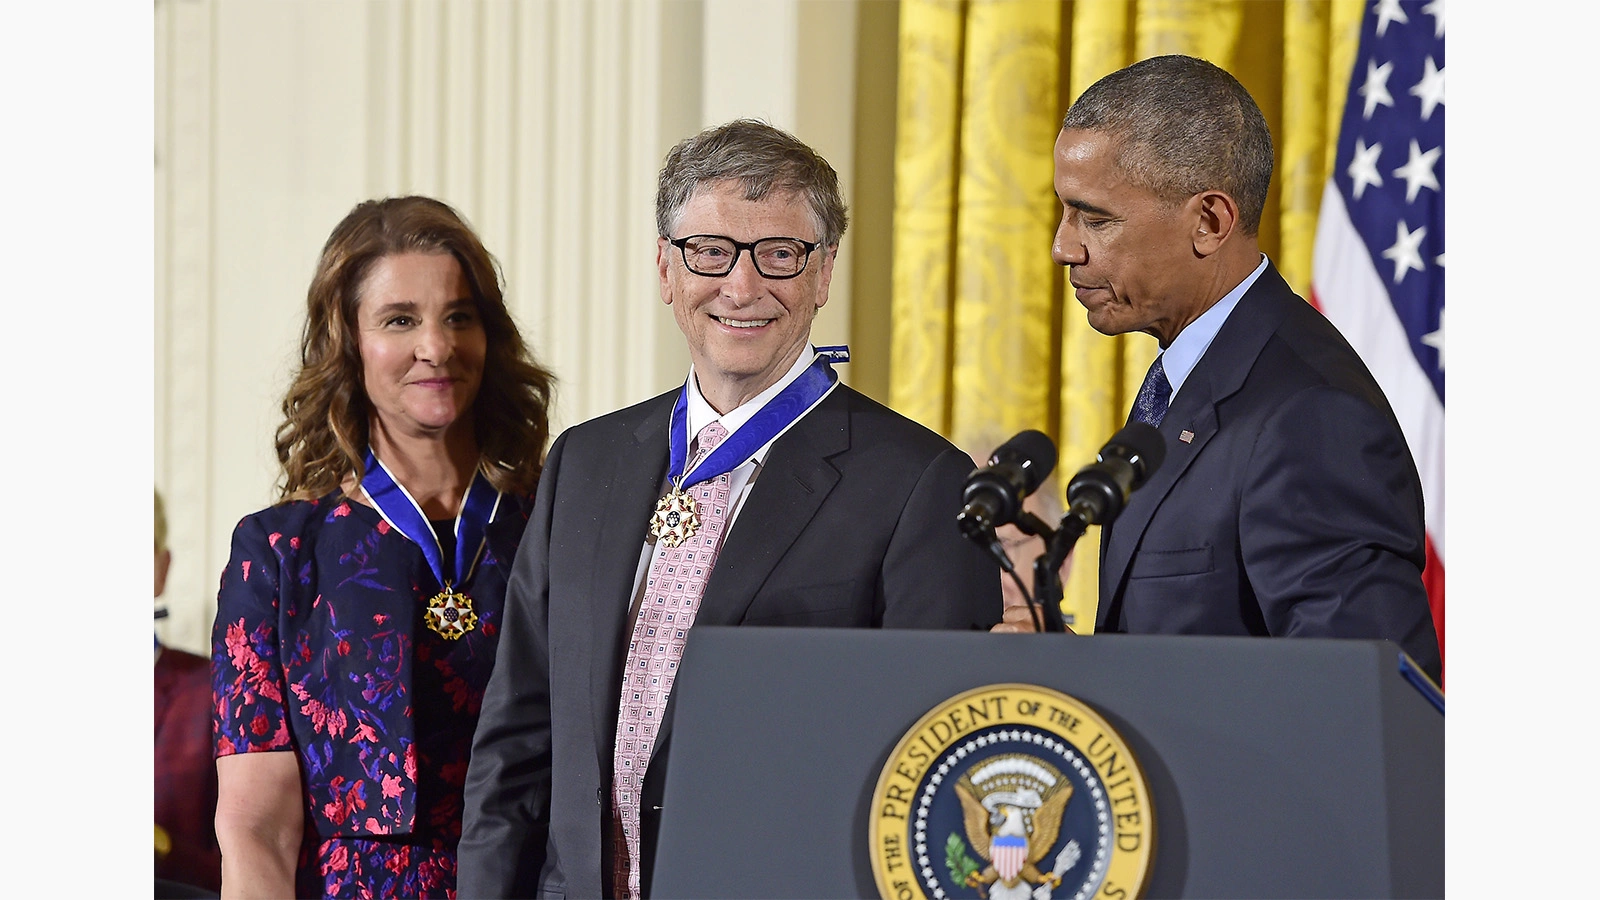 <p>На фото: экс-президент США Барак Обама вручает медаль Свободы Биллу и Мелинде Гейтс, Вашингтон, 22 ноября 2016 года</p>

<p></p>